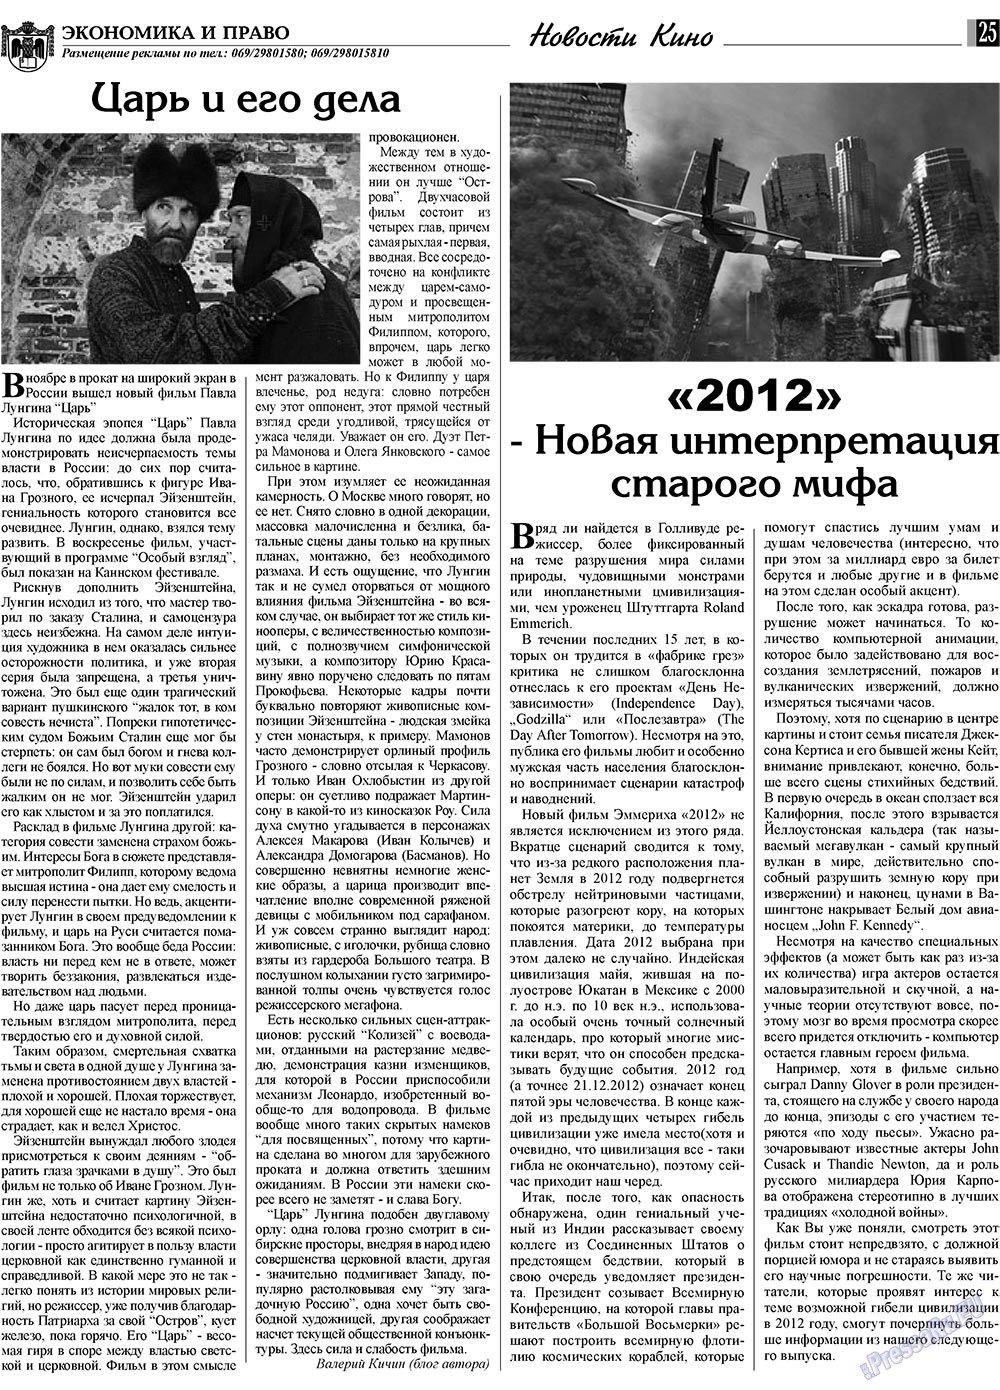 Экономика и право, газета. 2009 №12 стр.25